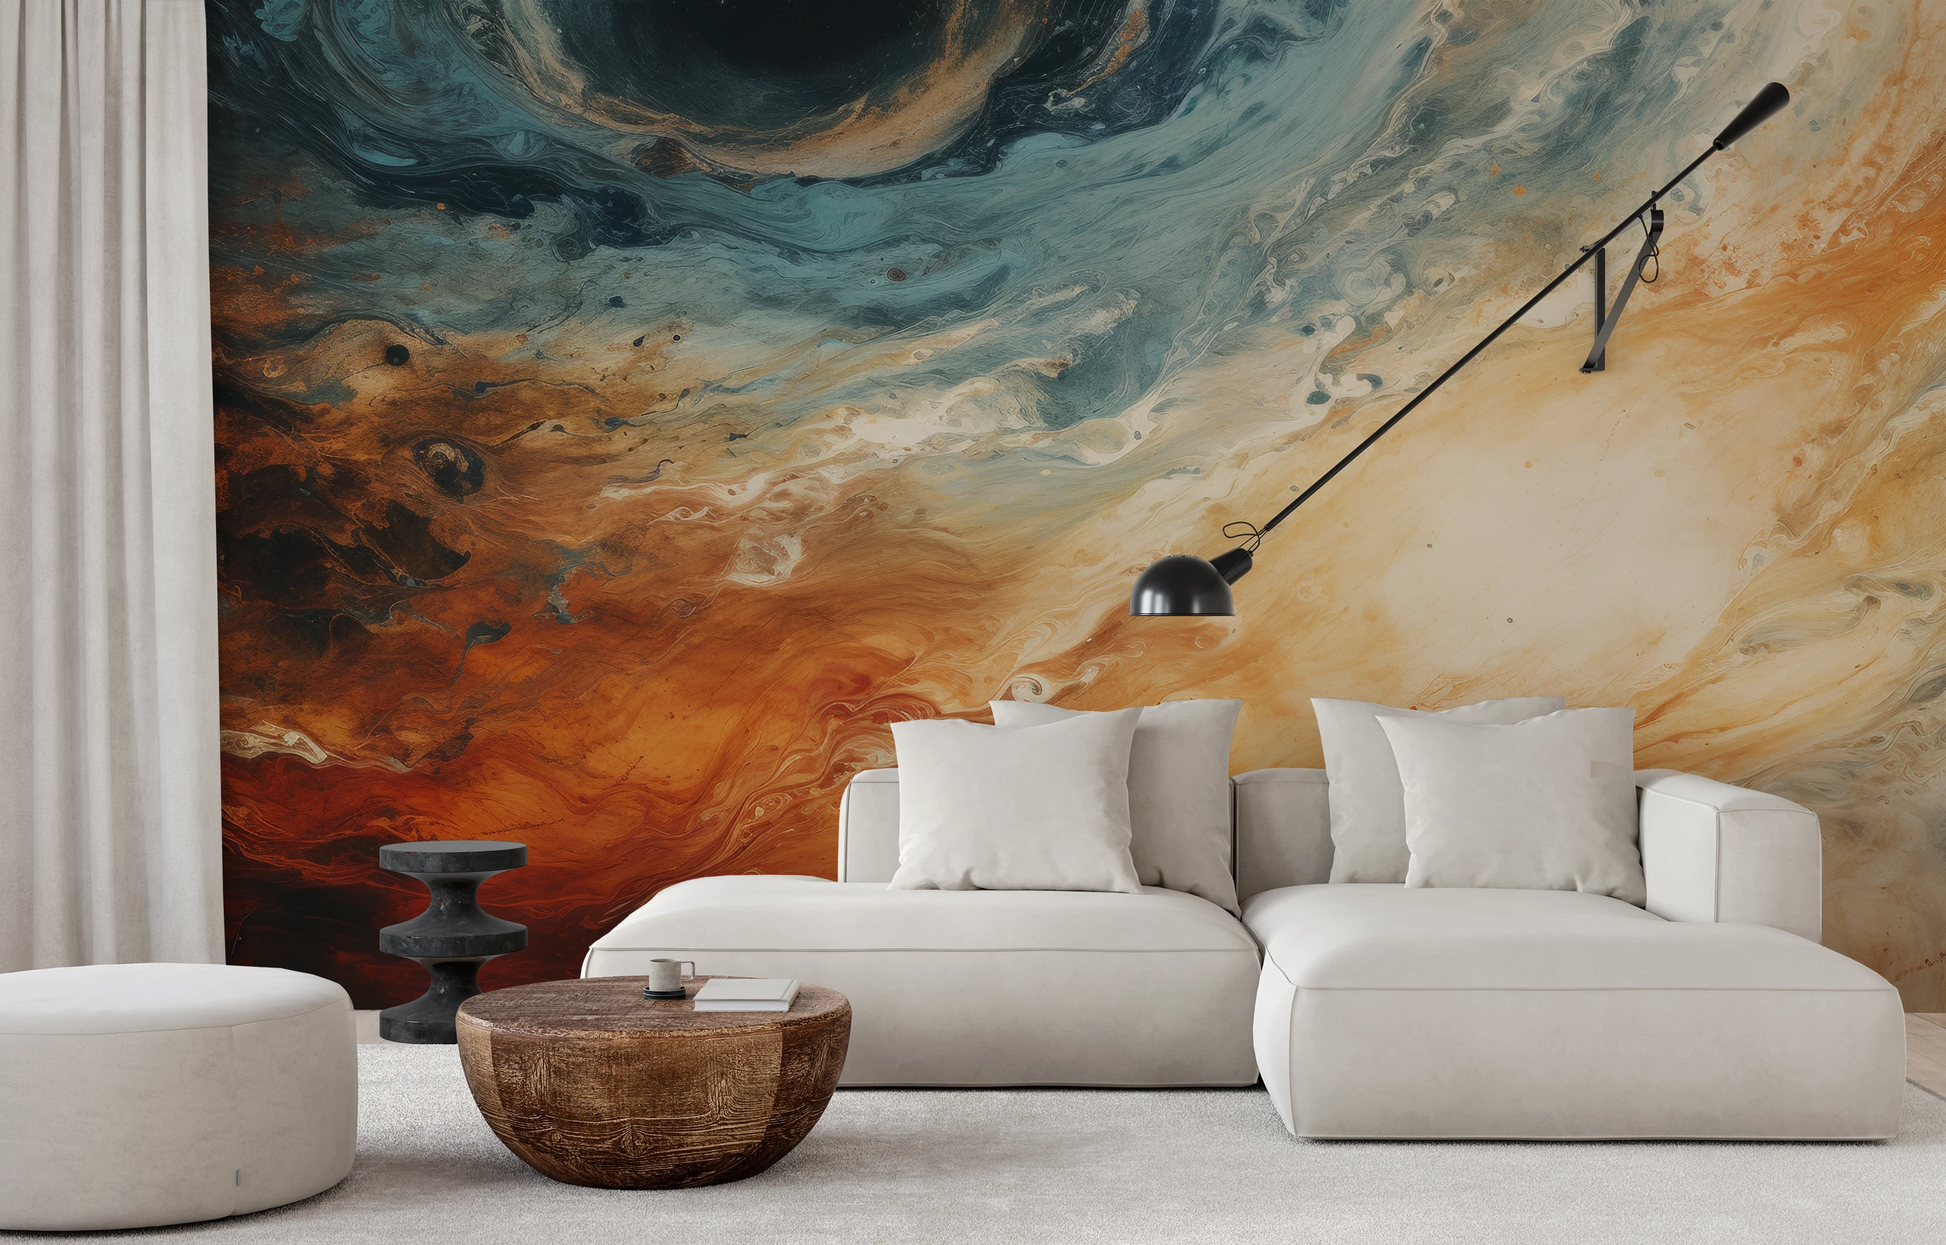 Wzór fototapety artystycznej o nazwie Jovian Storm pokazanej w aranżacji wnętrza.